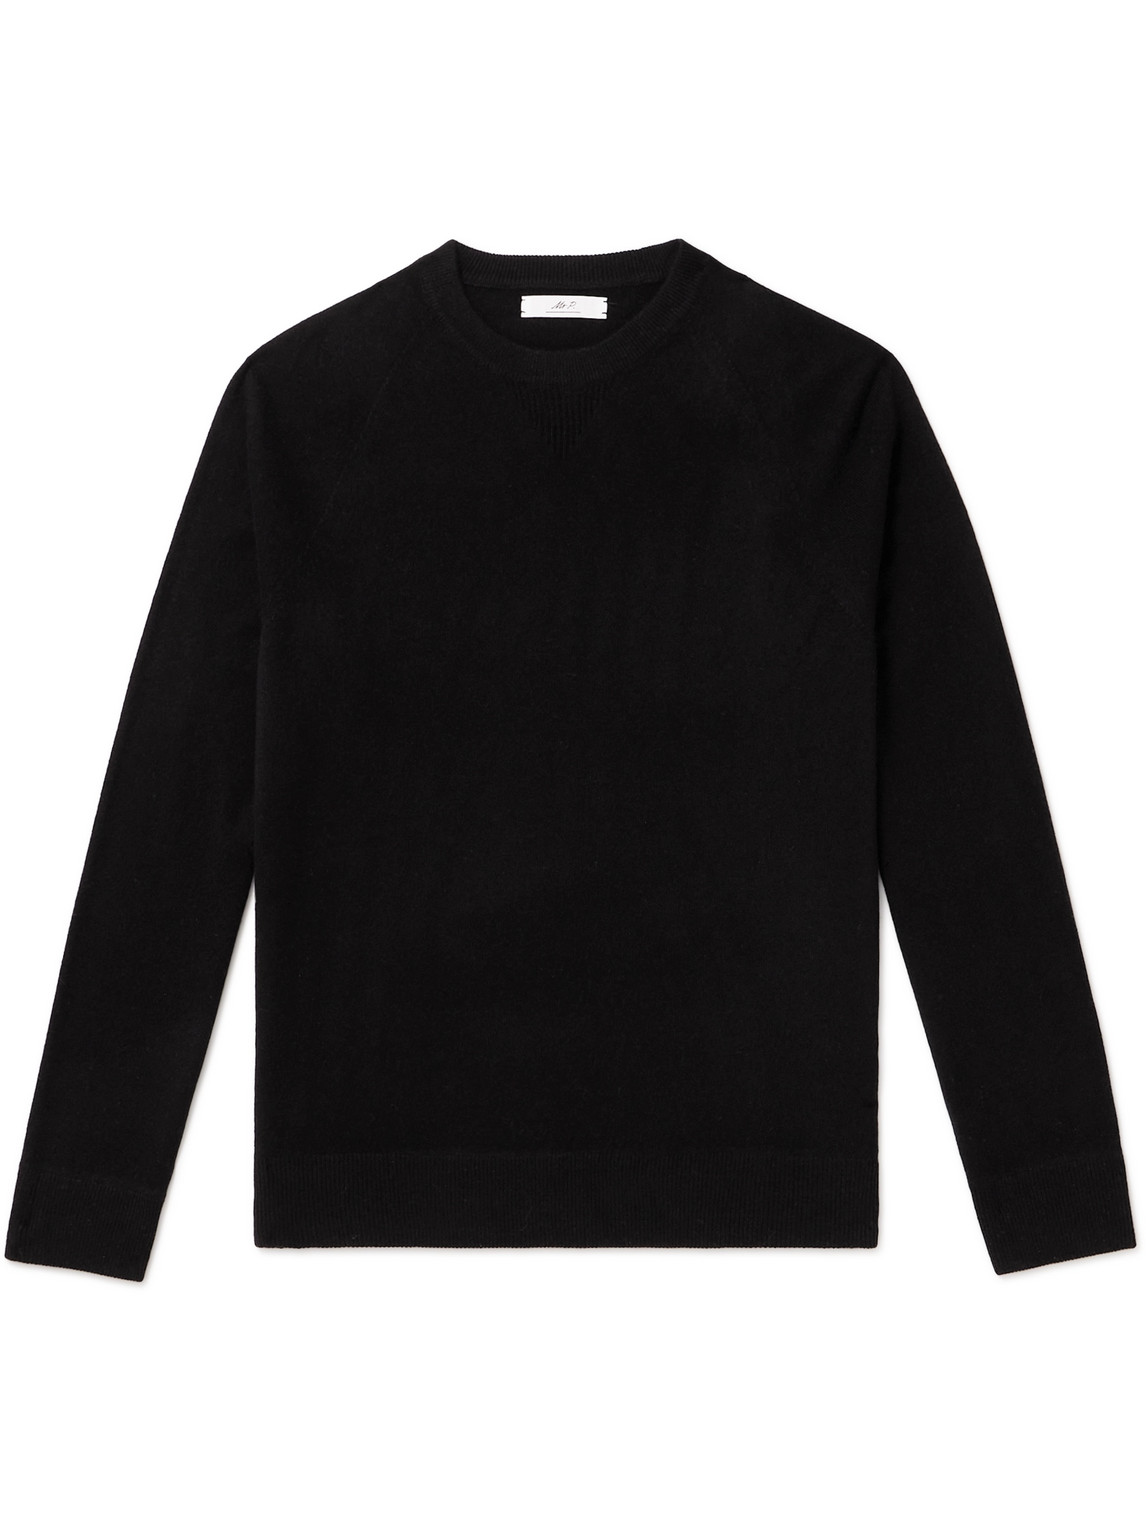 Mr P. - Wool and Cashmere-Blend Sweater - Men - Black - L von Mr P.